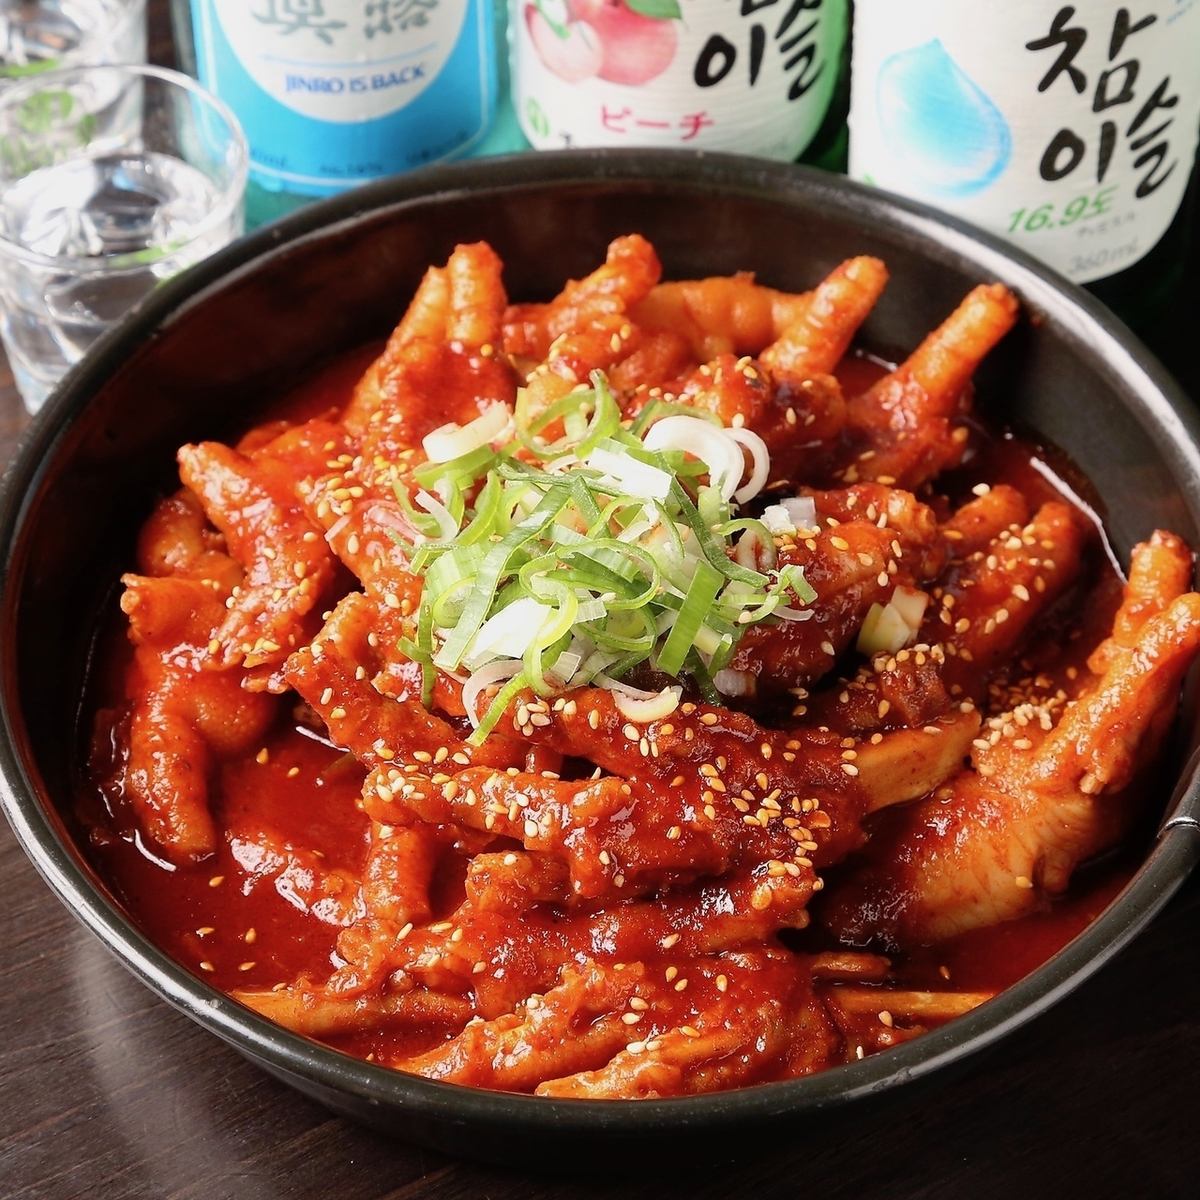 激辛だけど旨味たっぷりな本格韓国料理をゆったり堪能できる♪